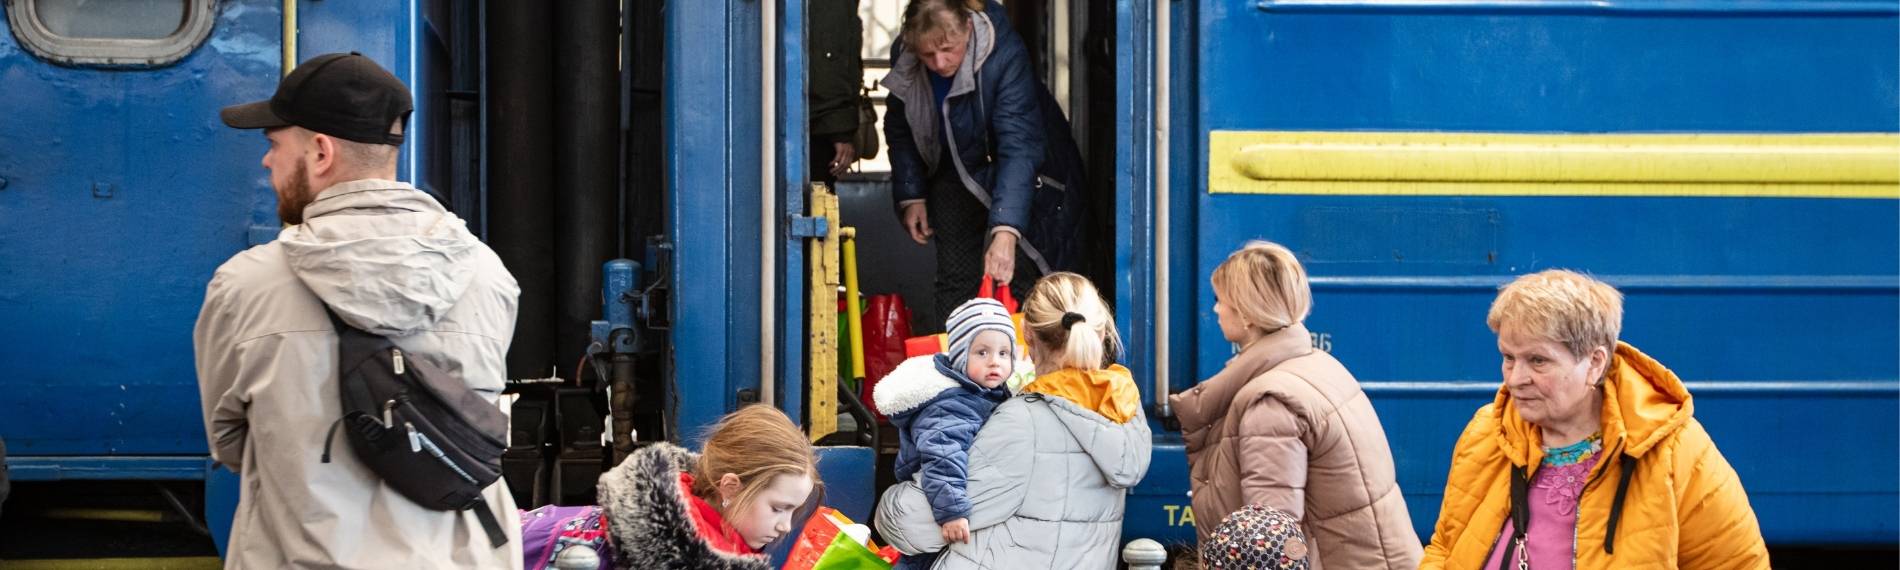 Ukrainische Flüchtlinge besteigen Zug